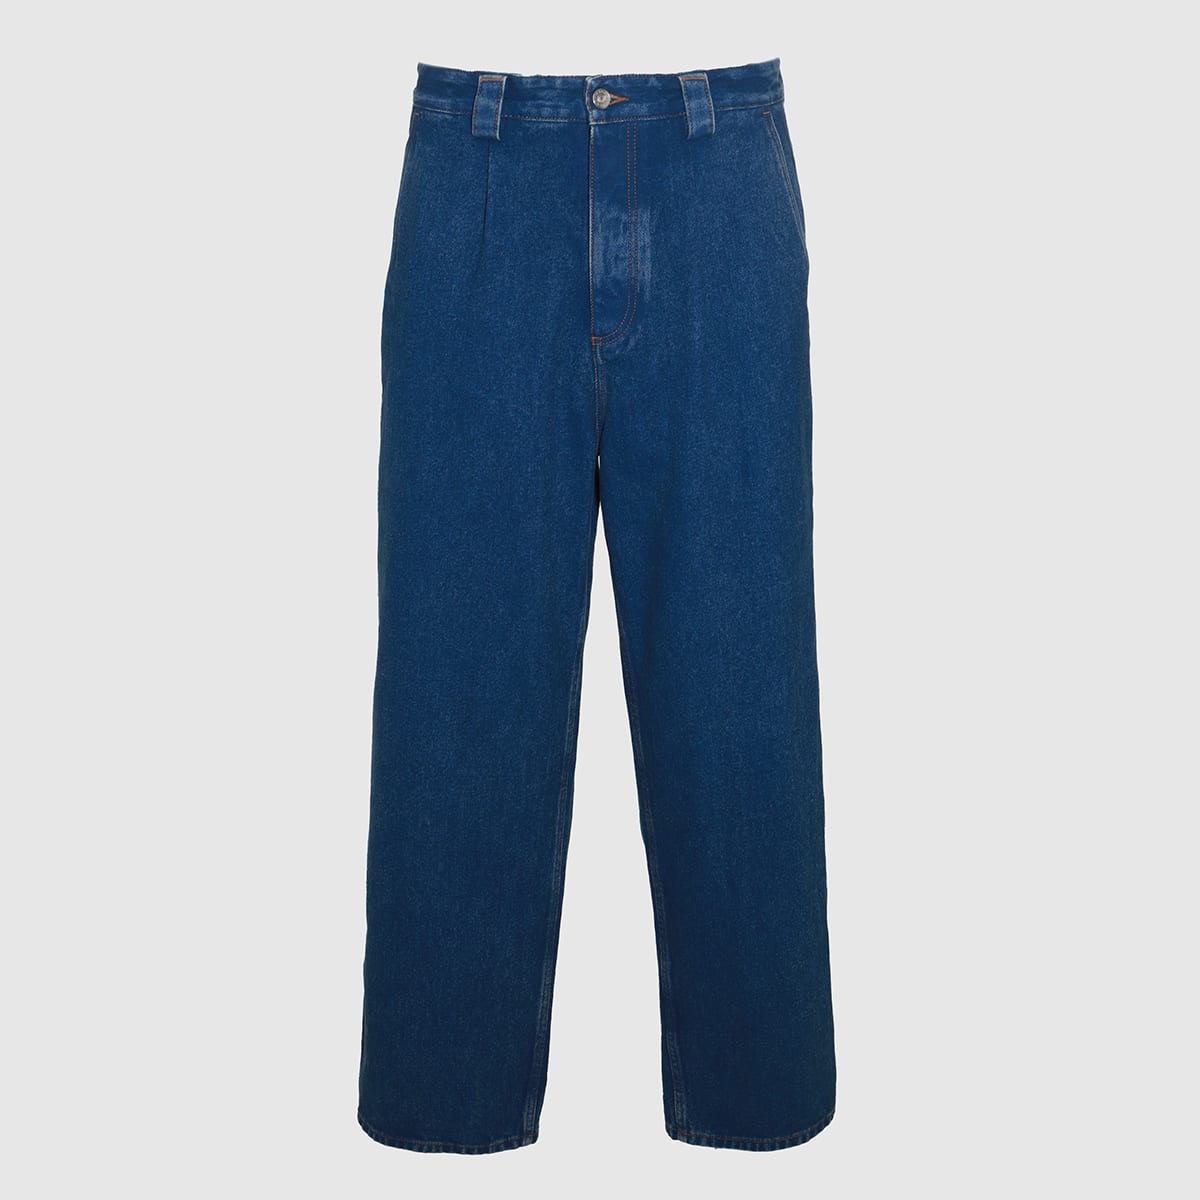 Blue Cotton Denim Jeans